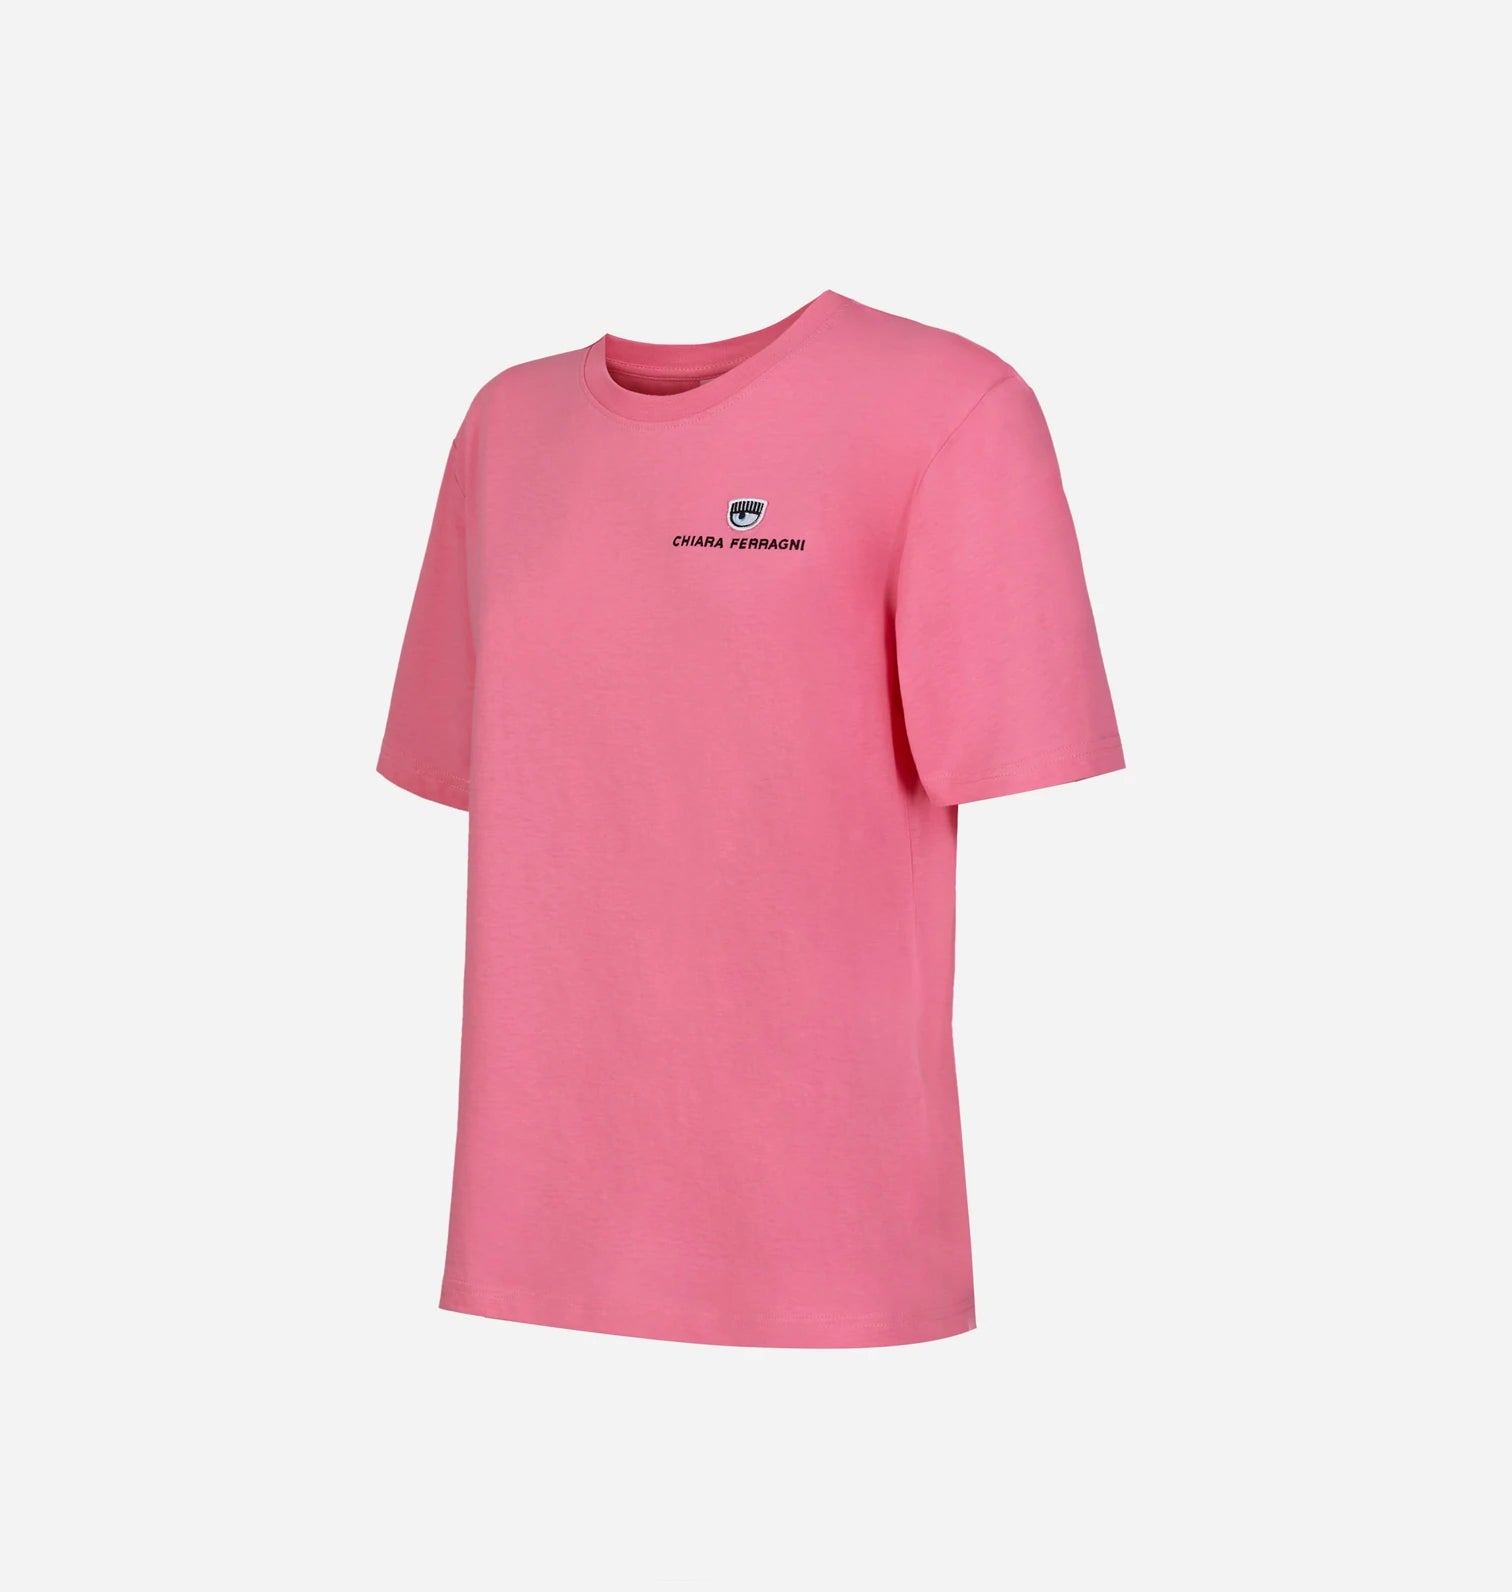 T-Shirt Chiara Ferragni con Logo Ricamato / Rosa - Ideal Moda